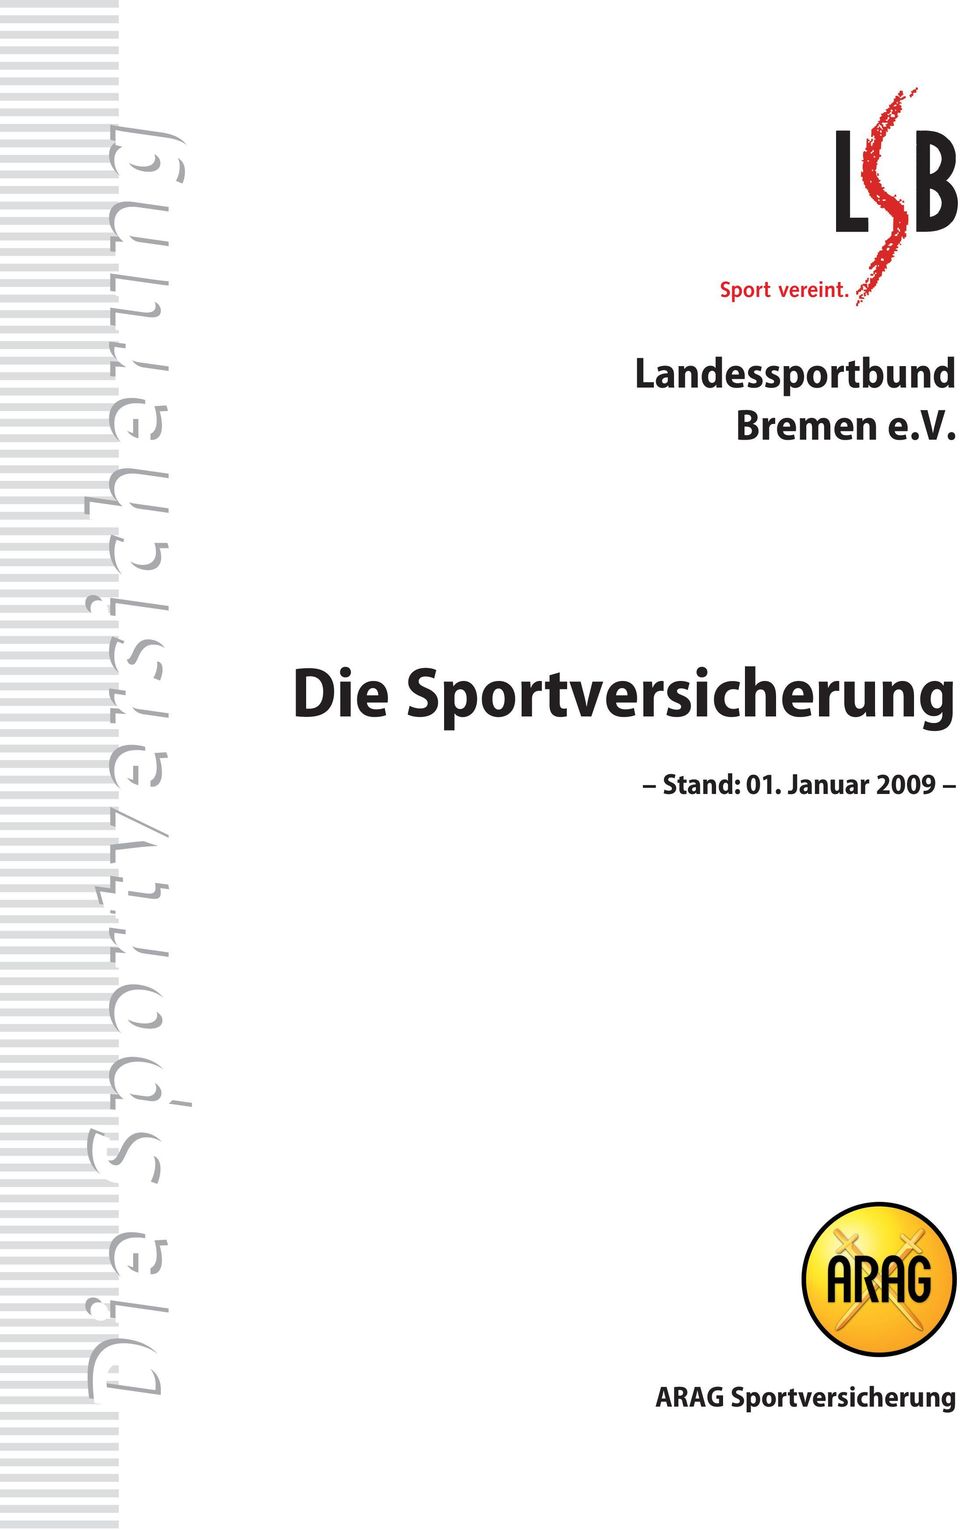 Landessportbund Bremen e.v.